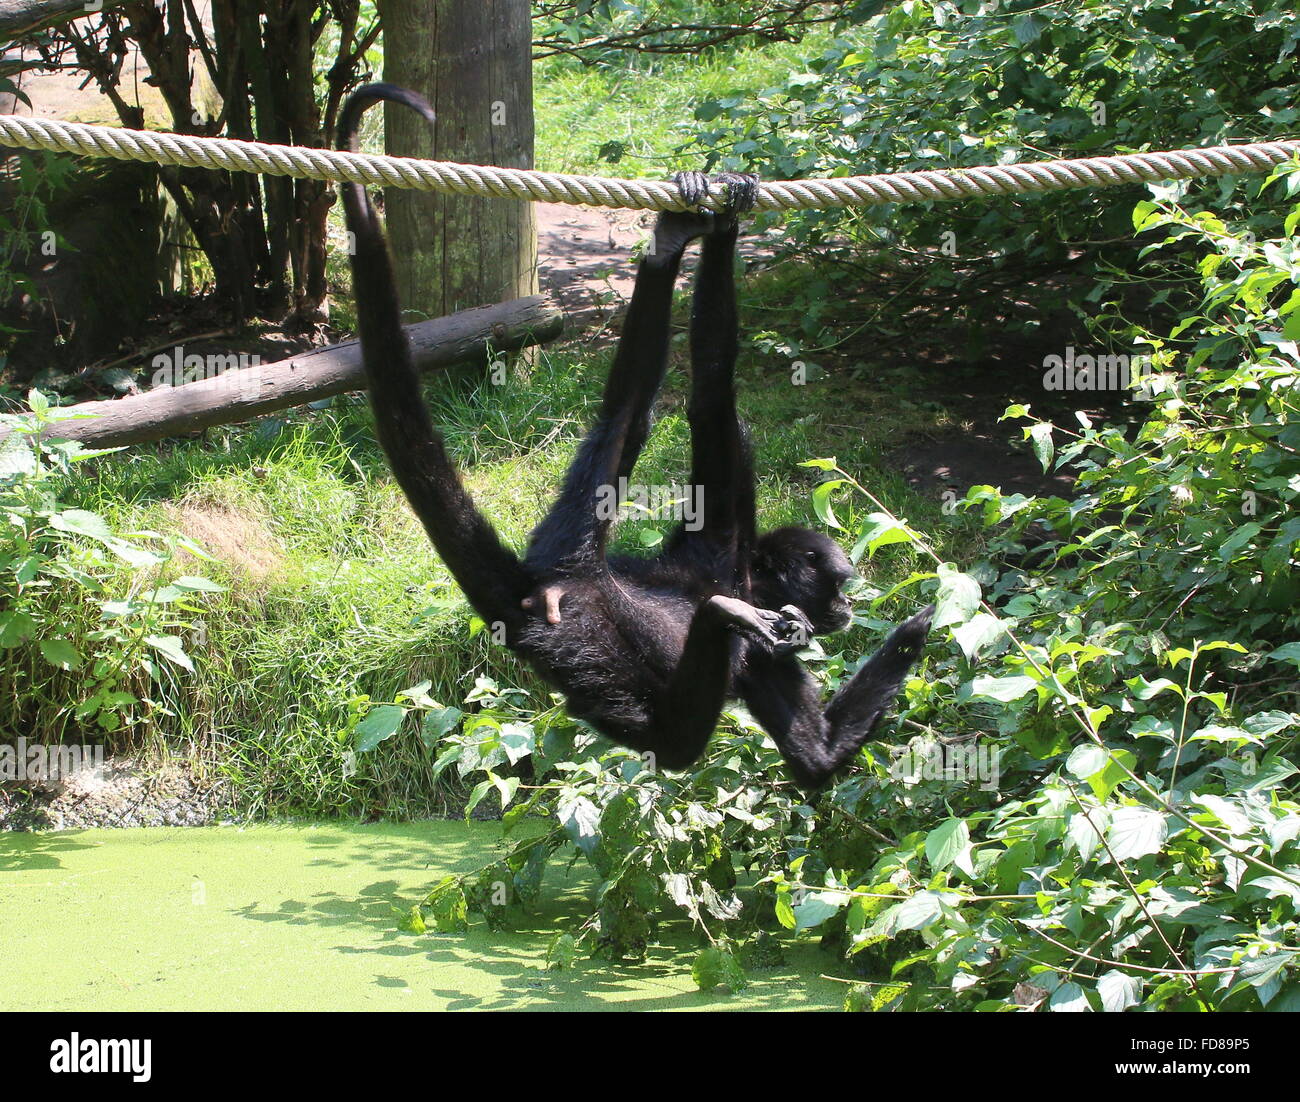 Cabeza negra colombiana mono araña (Ateles fusciceps robustus) colgando de las cuerdas por su cola prensil en un Zoo holandés Foto de stock